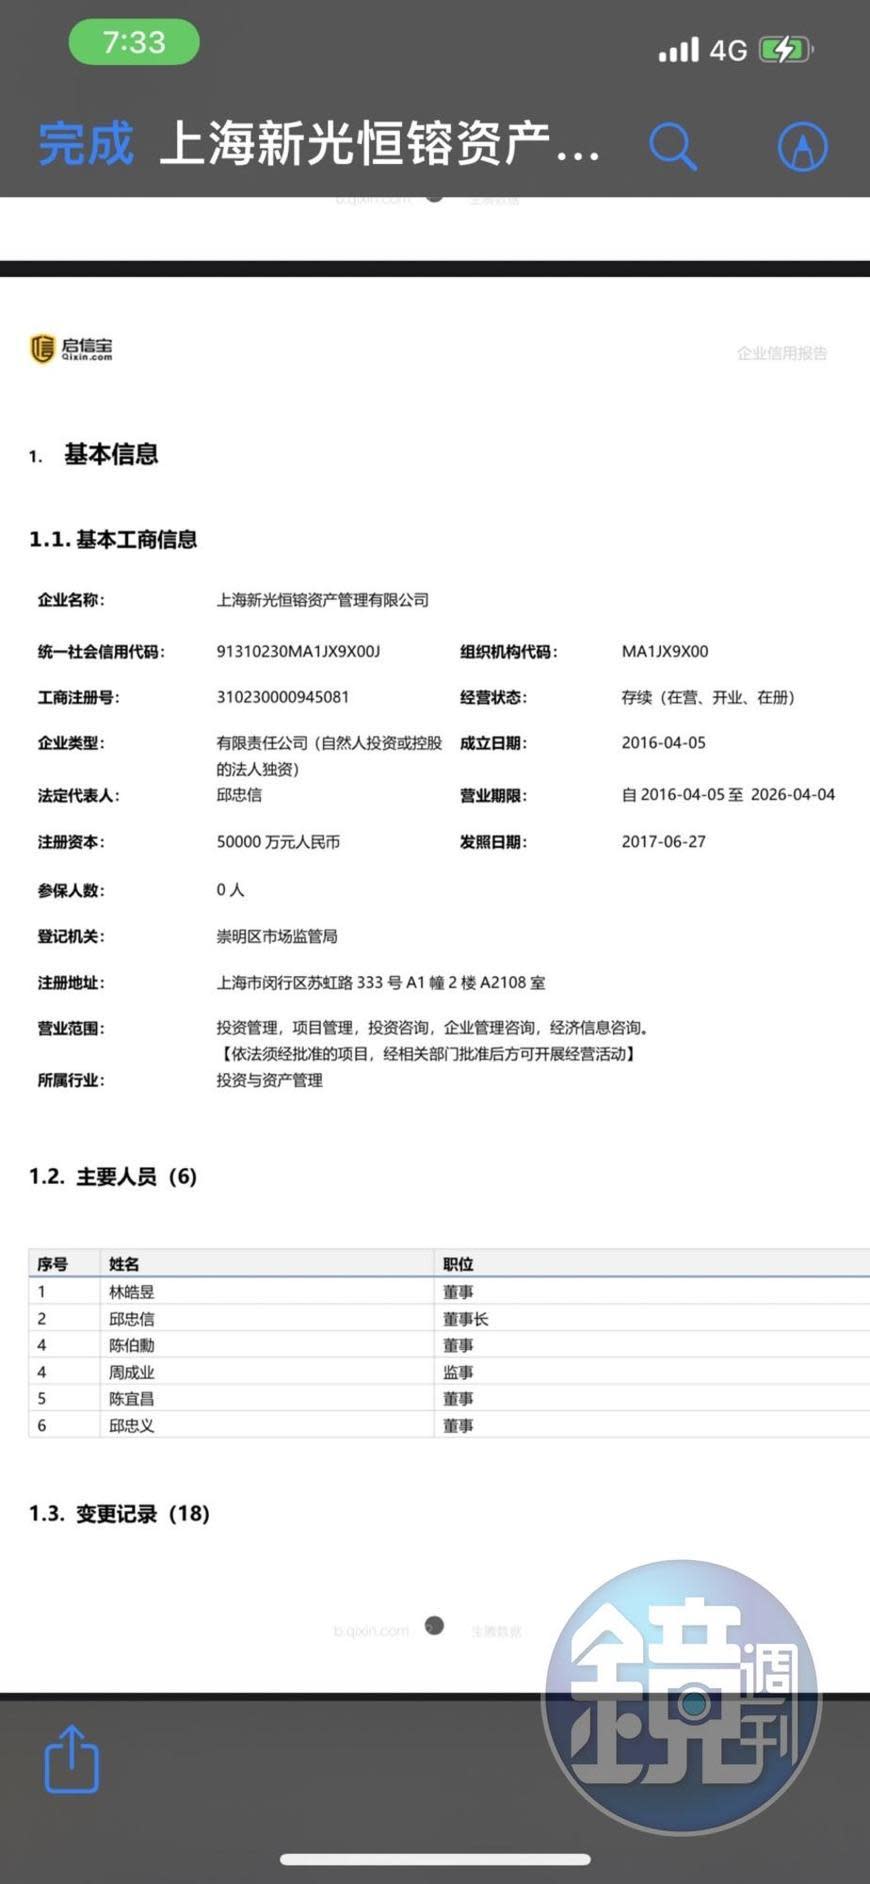 「啟信寶」對上海新光恒鎔資產公司的聯徵查詢企業信用報告內容。